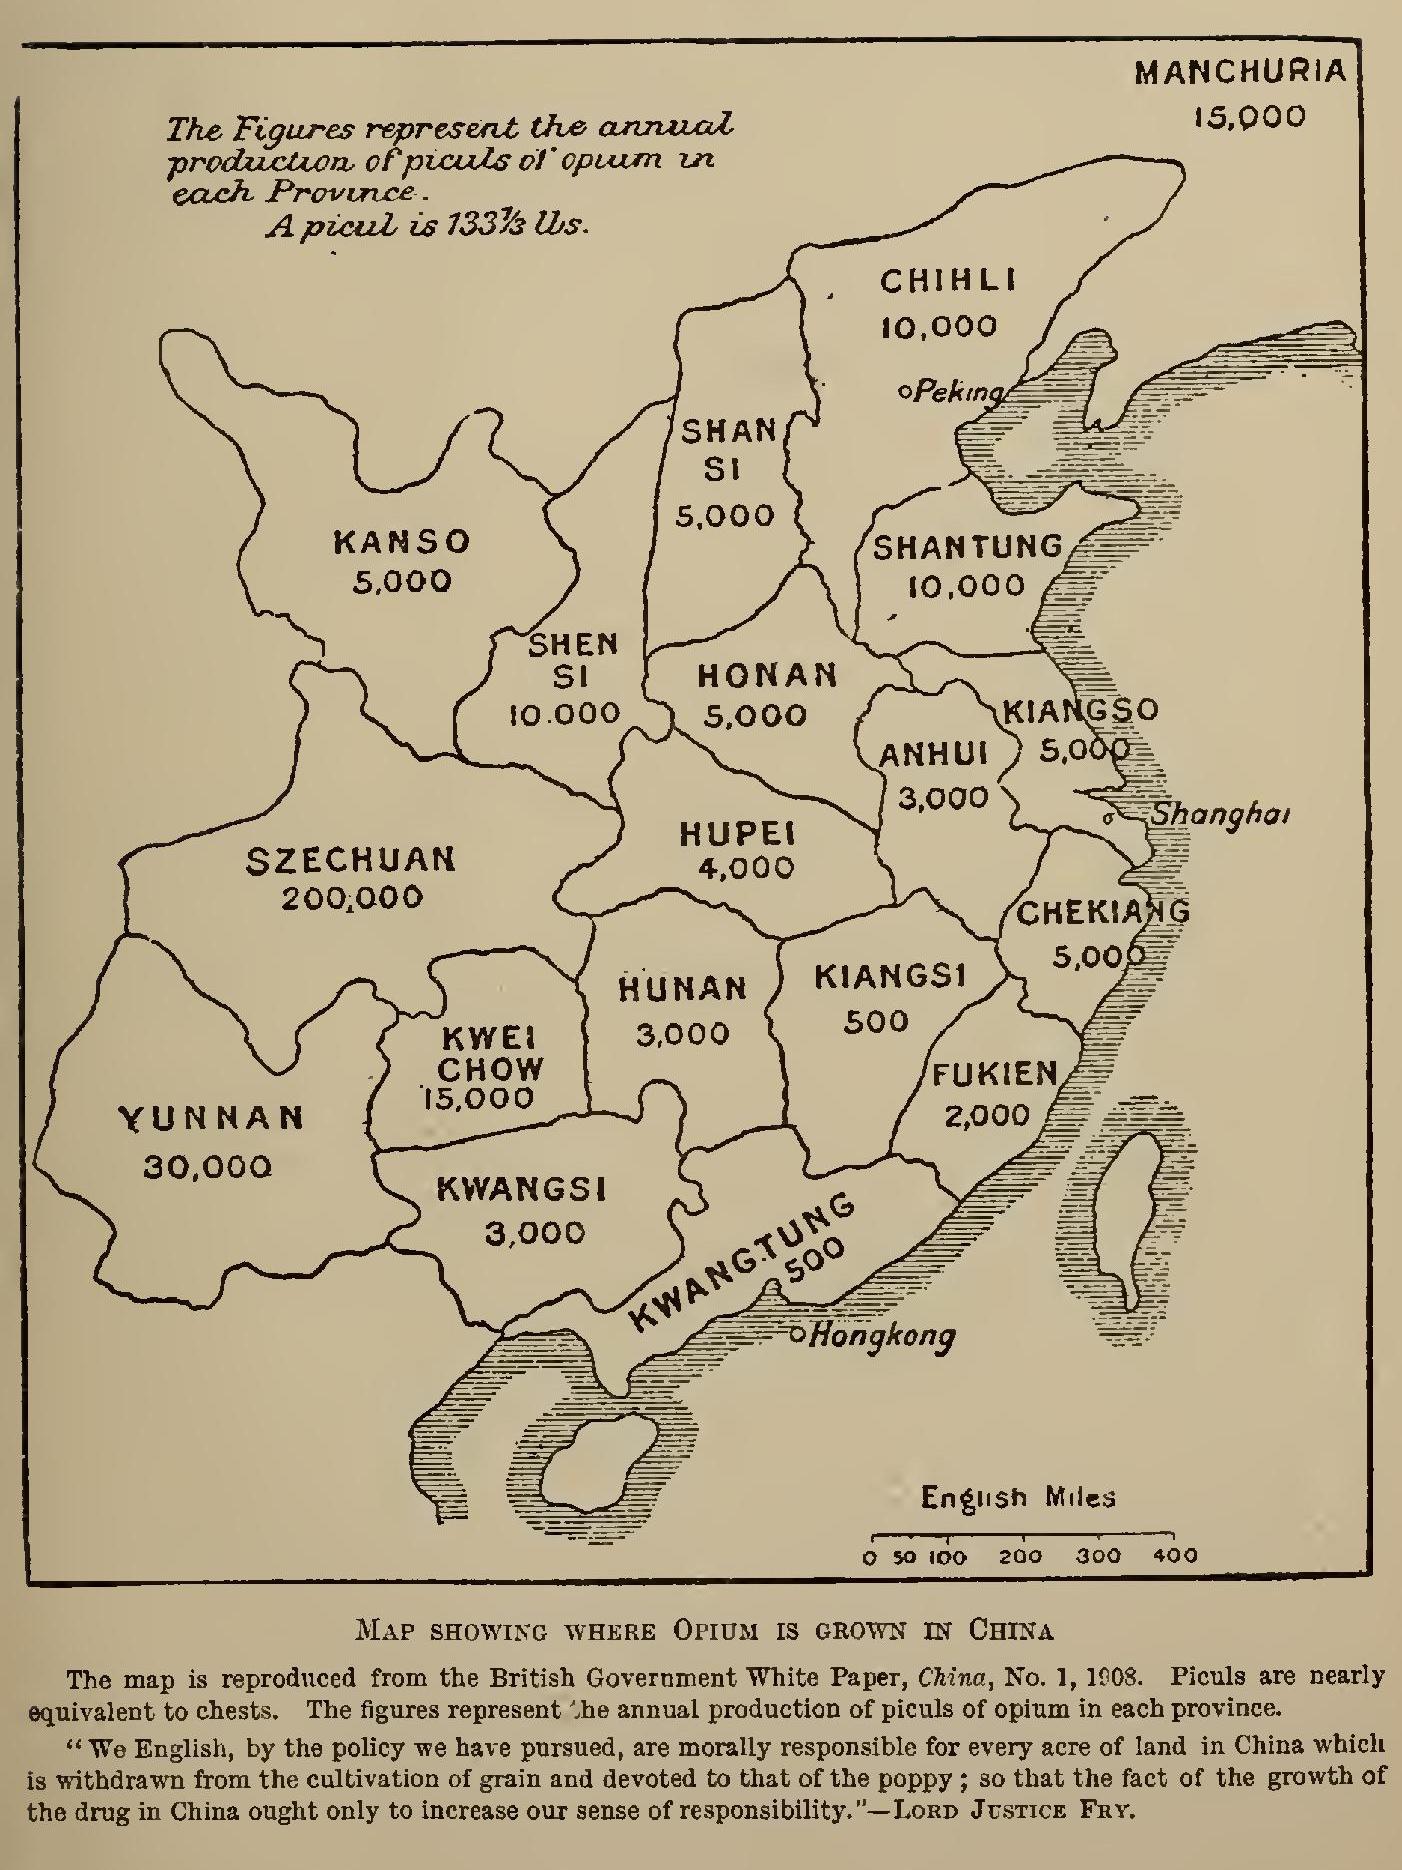 Çin'de 1908 yılında üretilen afyon miktarını gösteren harita